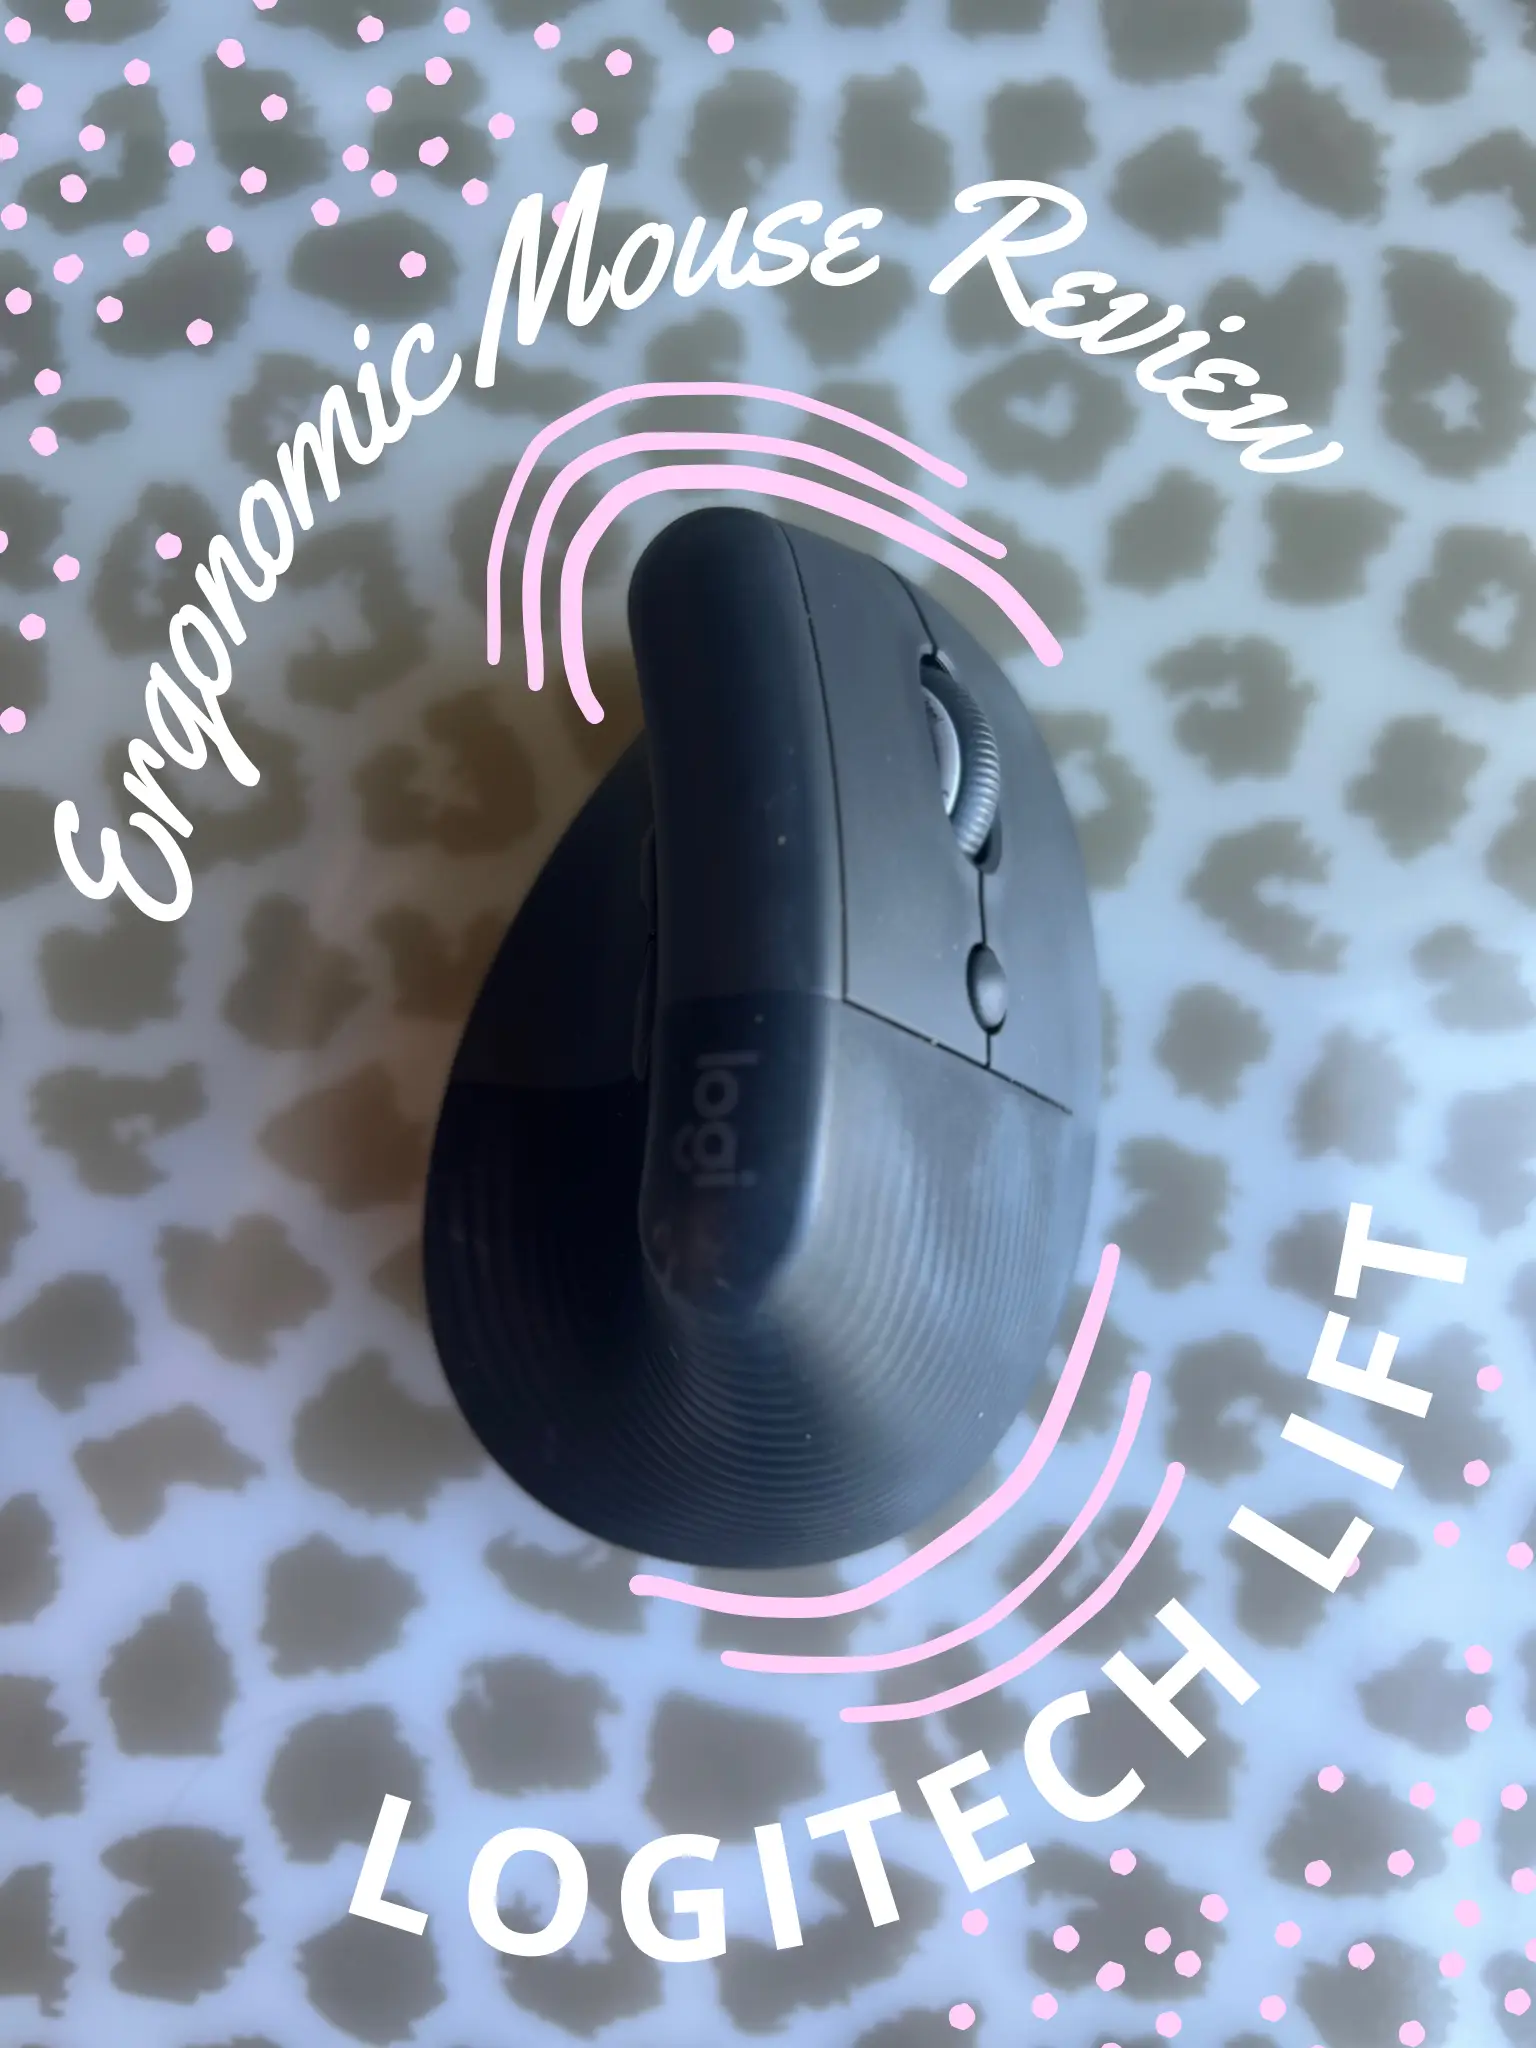 Logitech Lift Vertical Ergonomic Mouse Review: A Comfy Mouse